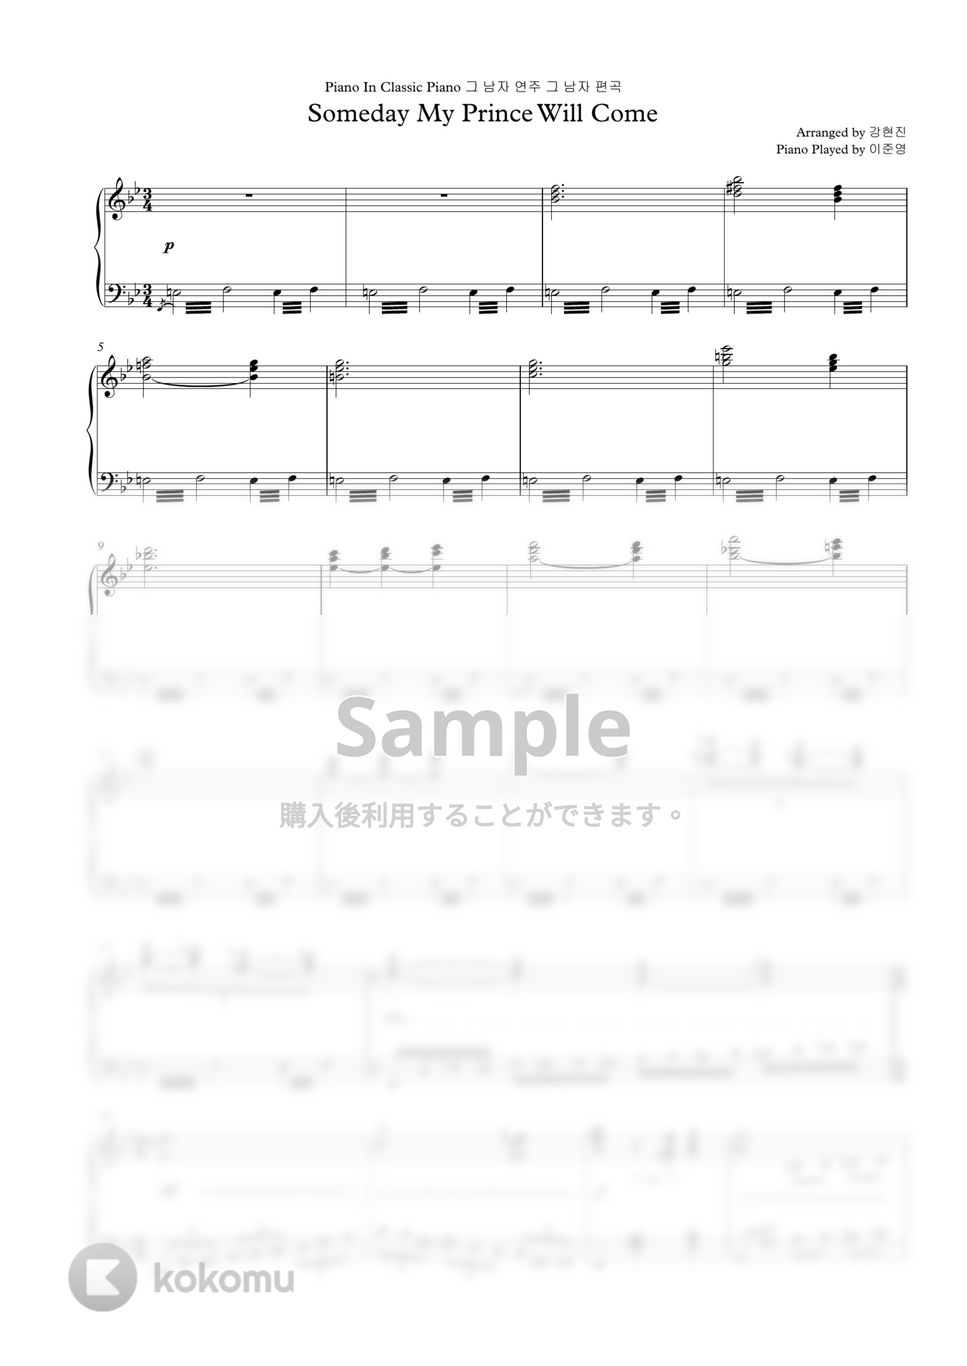 白雪姫 - いつか王子様が (Classic Piano Version) by GoGoPiano